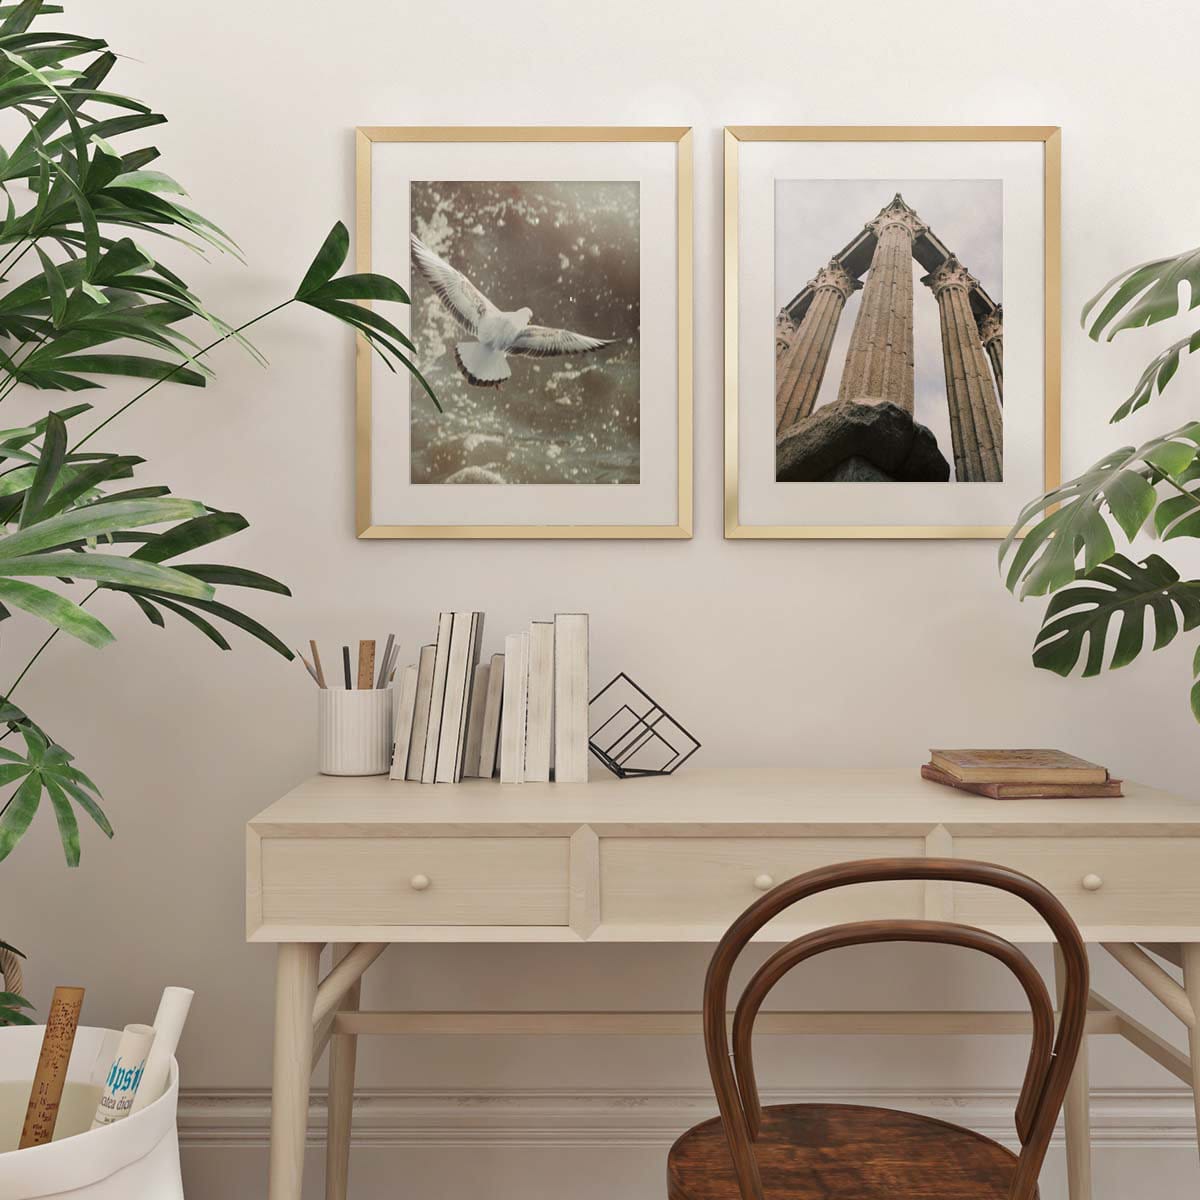 Gorgeous Gold Framed Prints Above Desk - Interior Design Trends for 2023